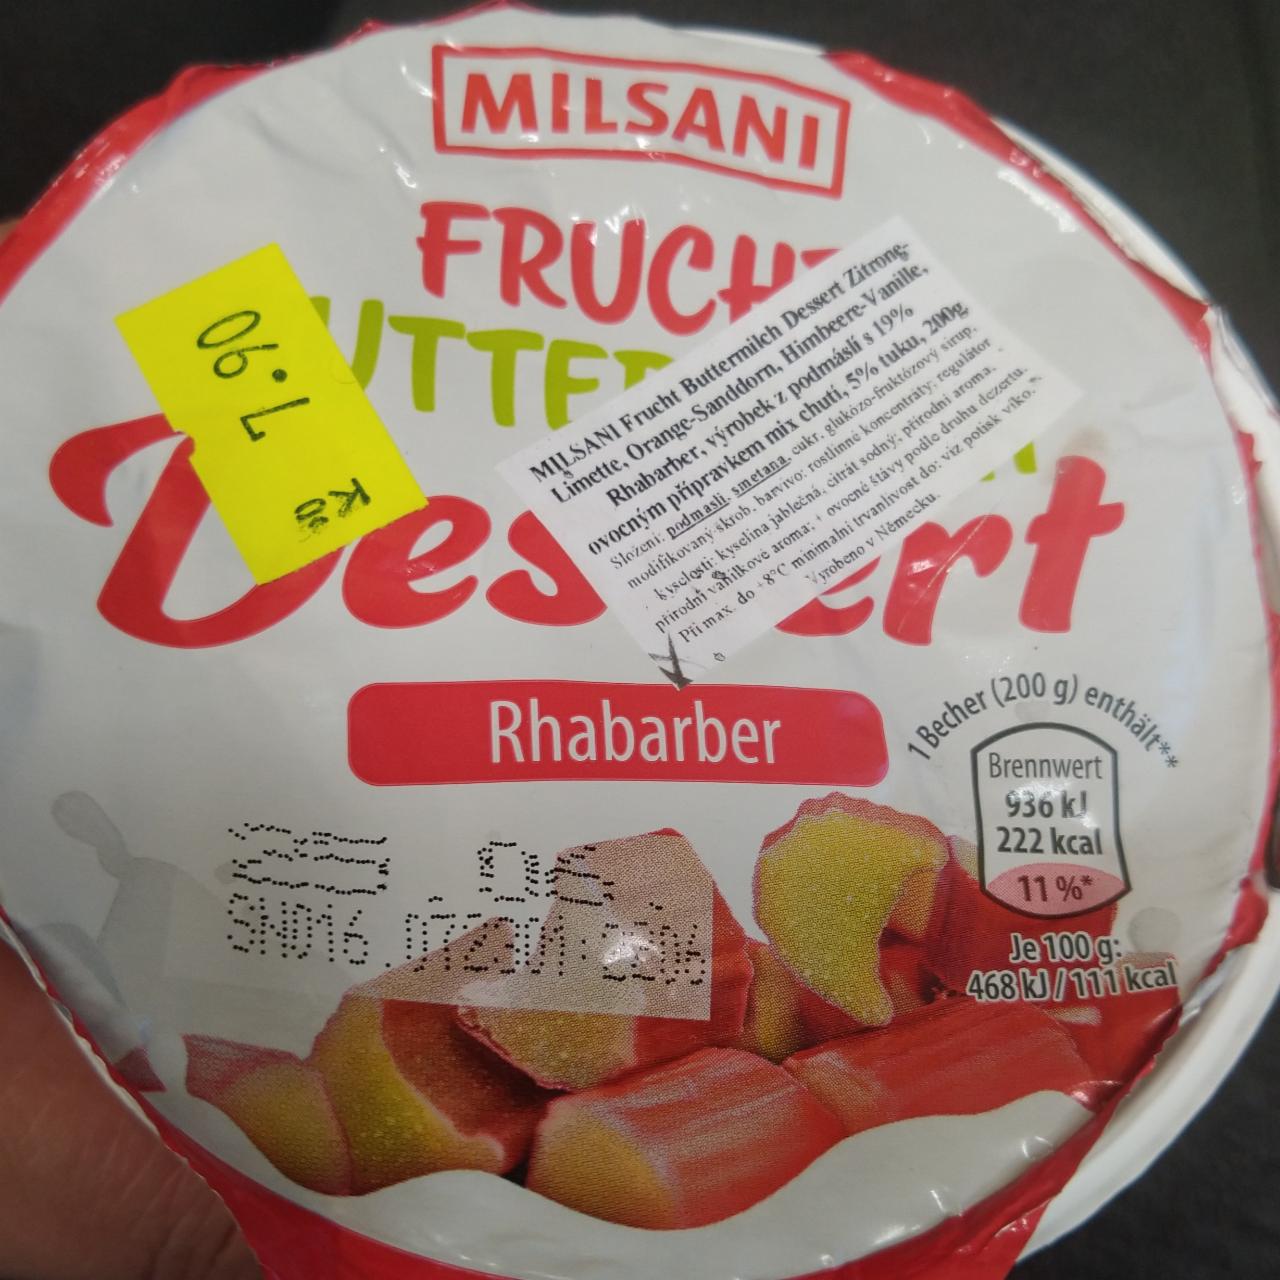 Fotografie - Milano Frucht Buttermilch Desert rhabarber Milsani